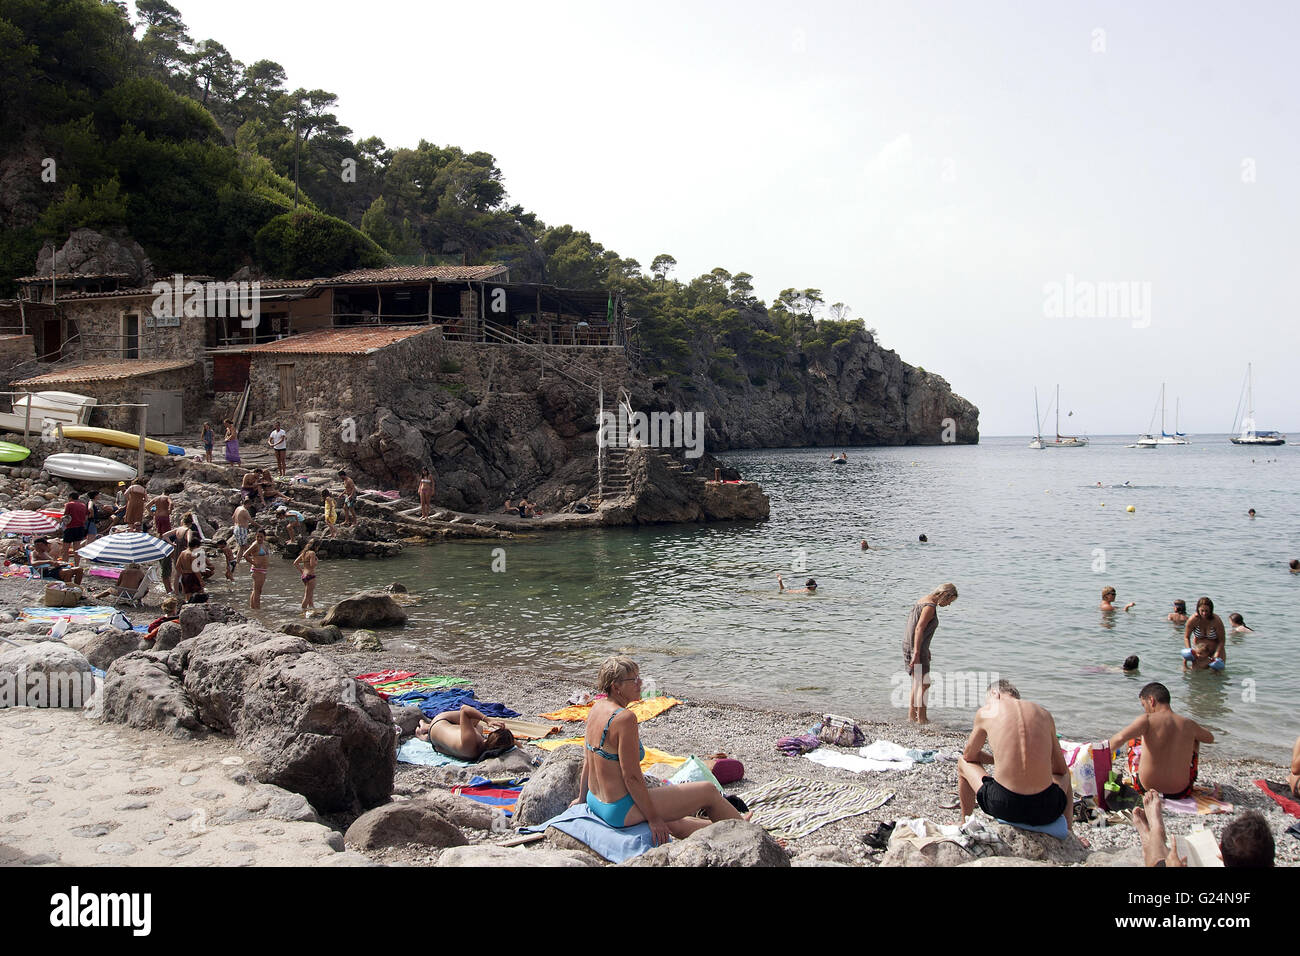 Una bella imagen de la playa de Palma de Mallorca con turistas tomando el sol, España, playa, turismo, vacaciones, barcos Foto de stock